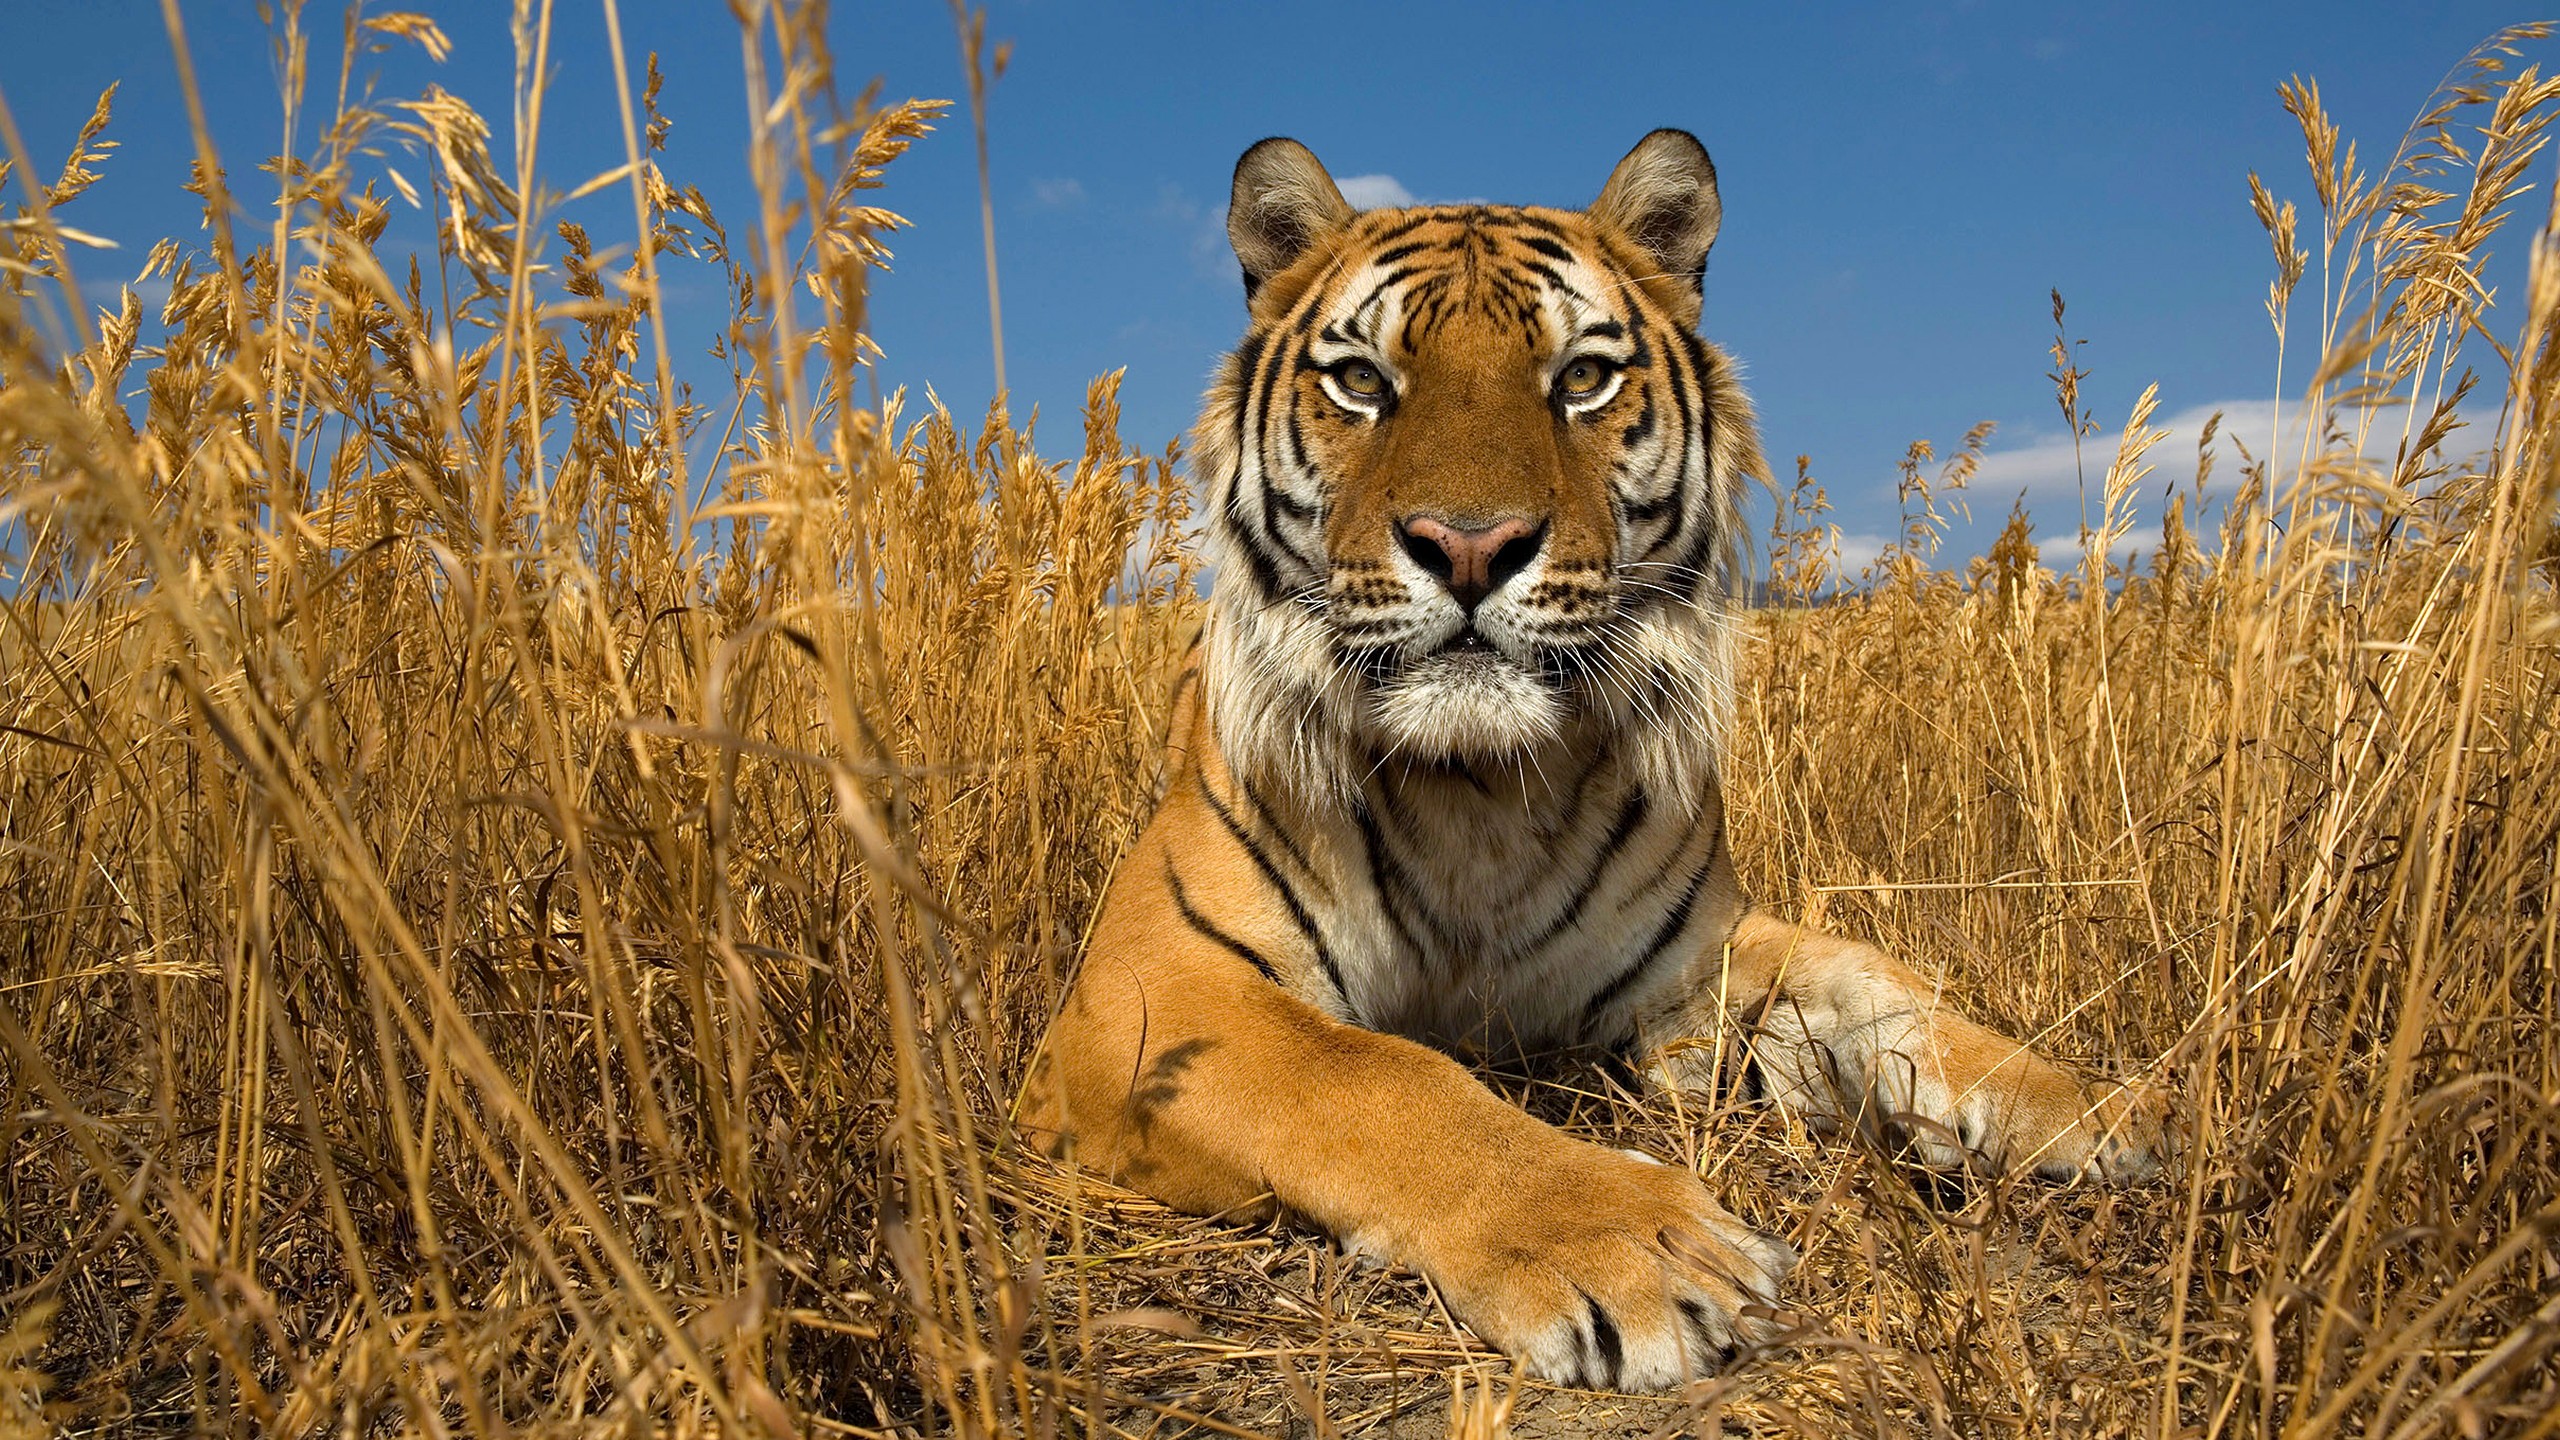 General 2560x1440 animals nature tiger big cats mammals